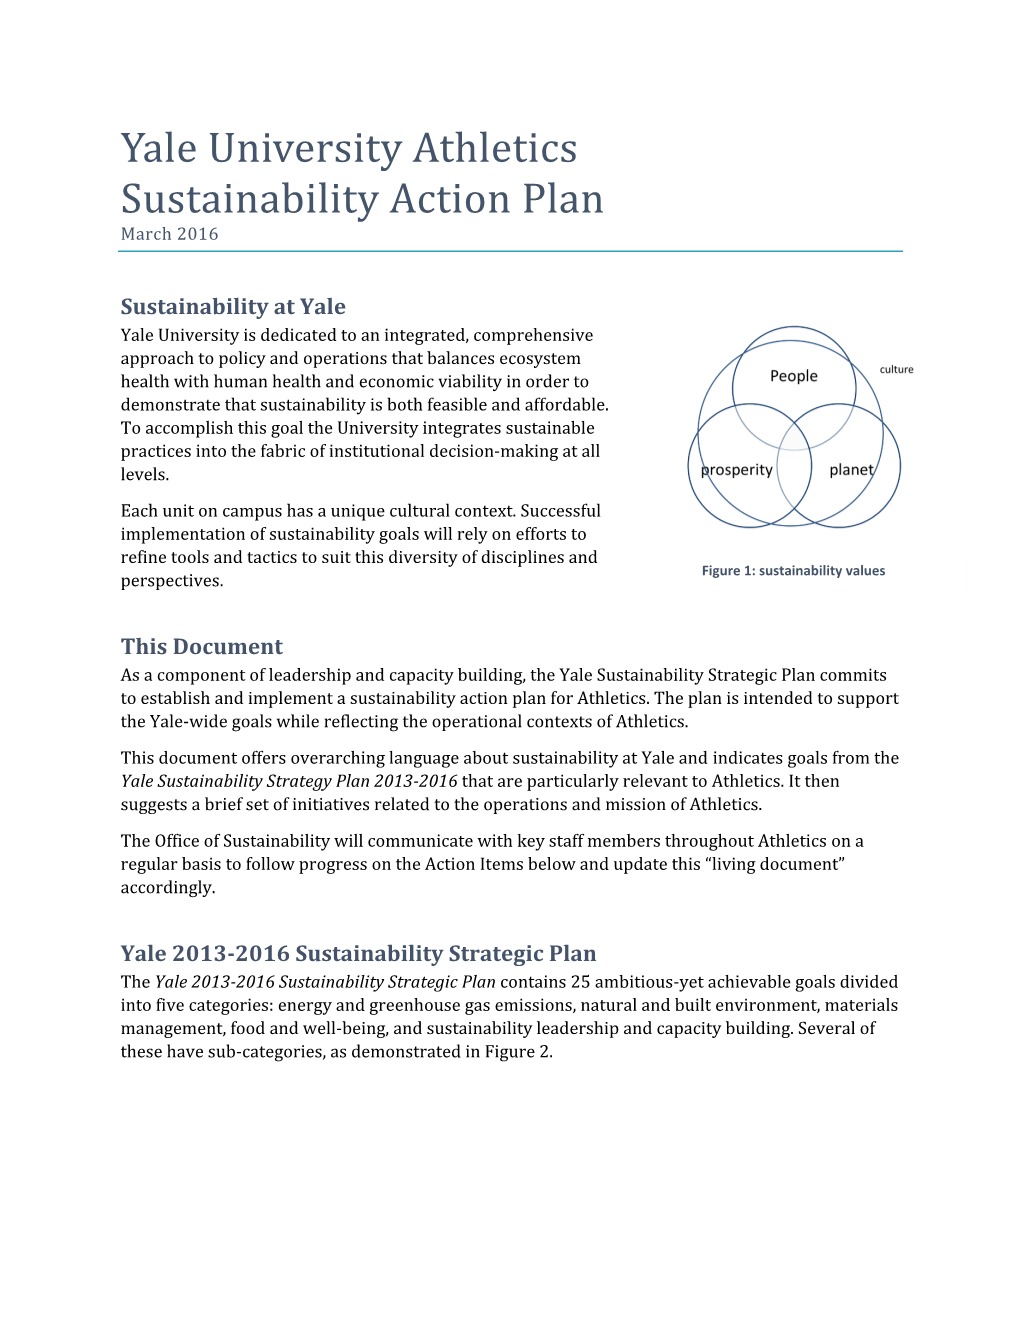 Yale University Athletics Sustainability Action Plan March 2016